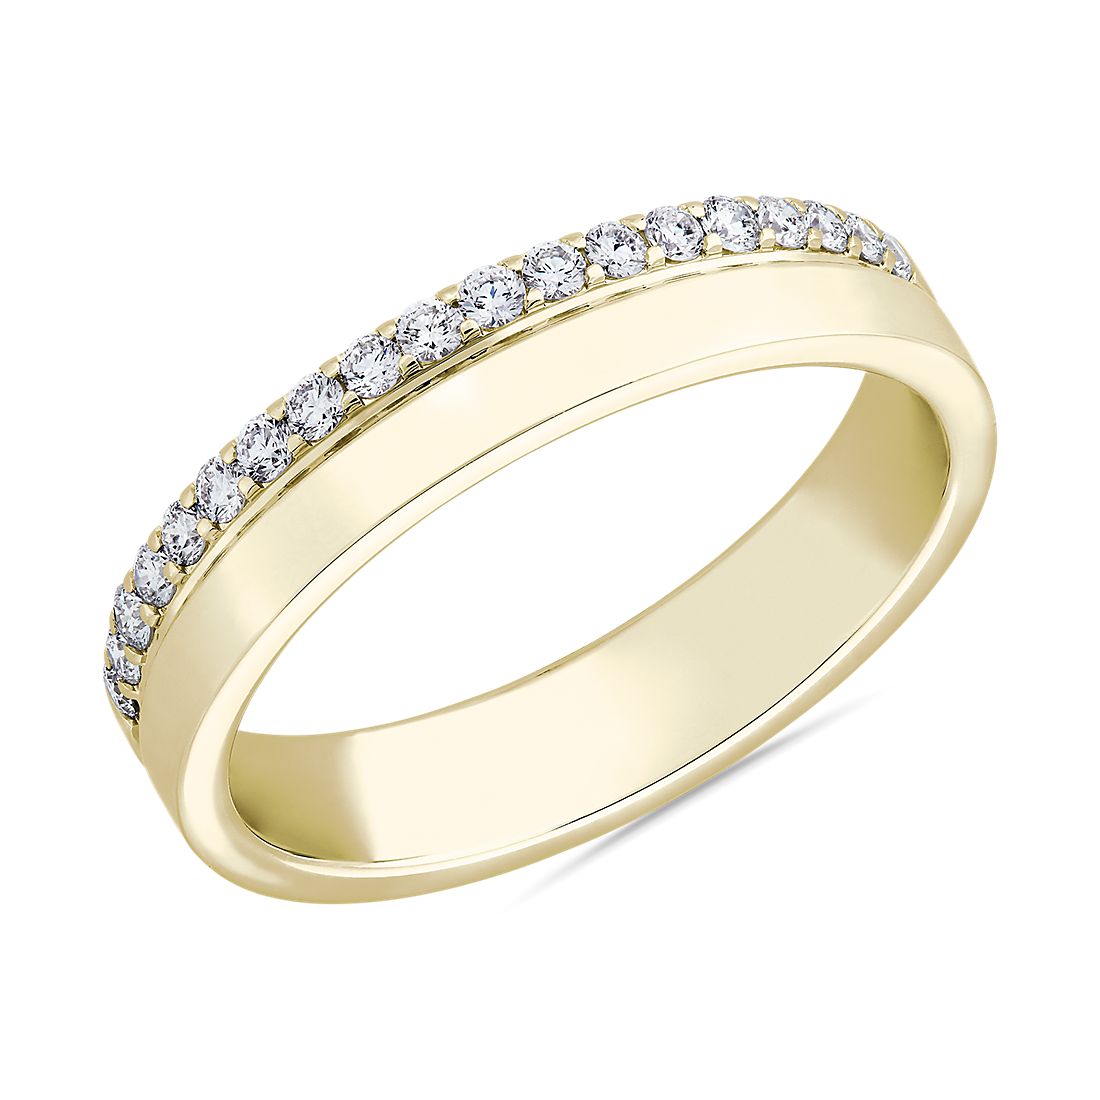 ZAC ZAC POSEN Diamond Edge Ring in 14k Yellow Gold (4 mm, 1/5 ct. tw.)